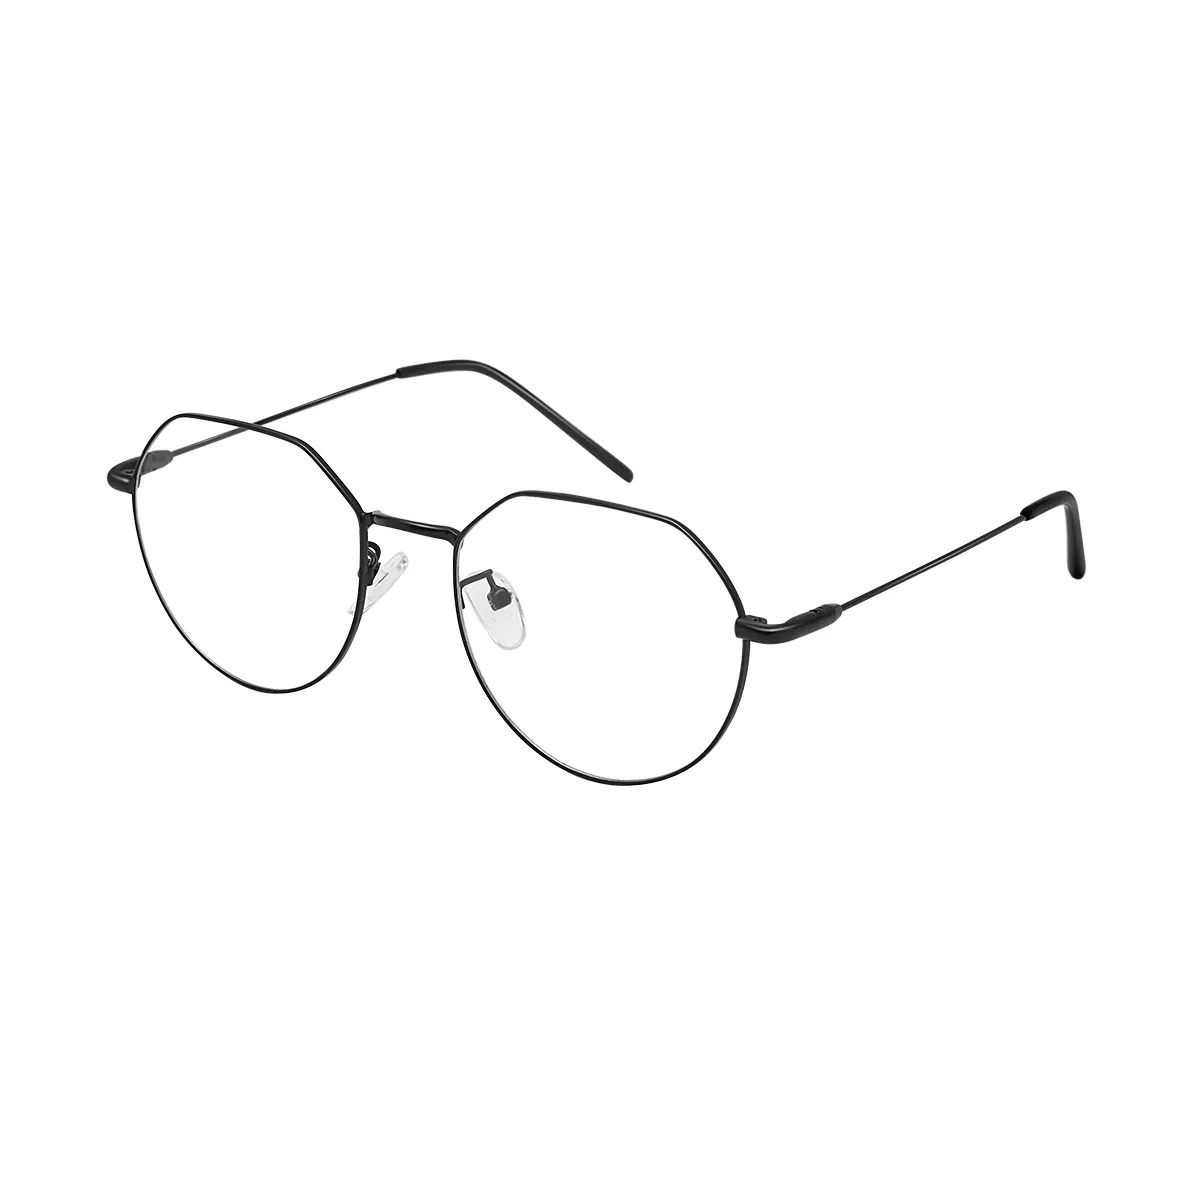 Havana - Geometric Black Glasses for Men & Women